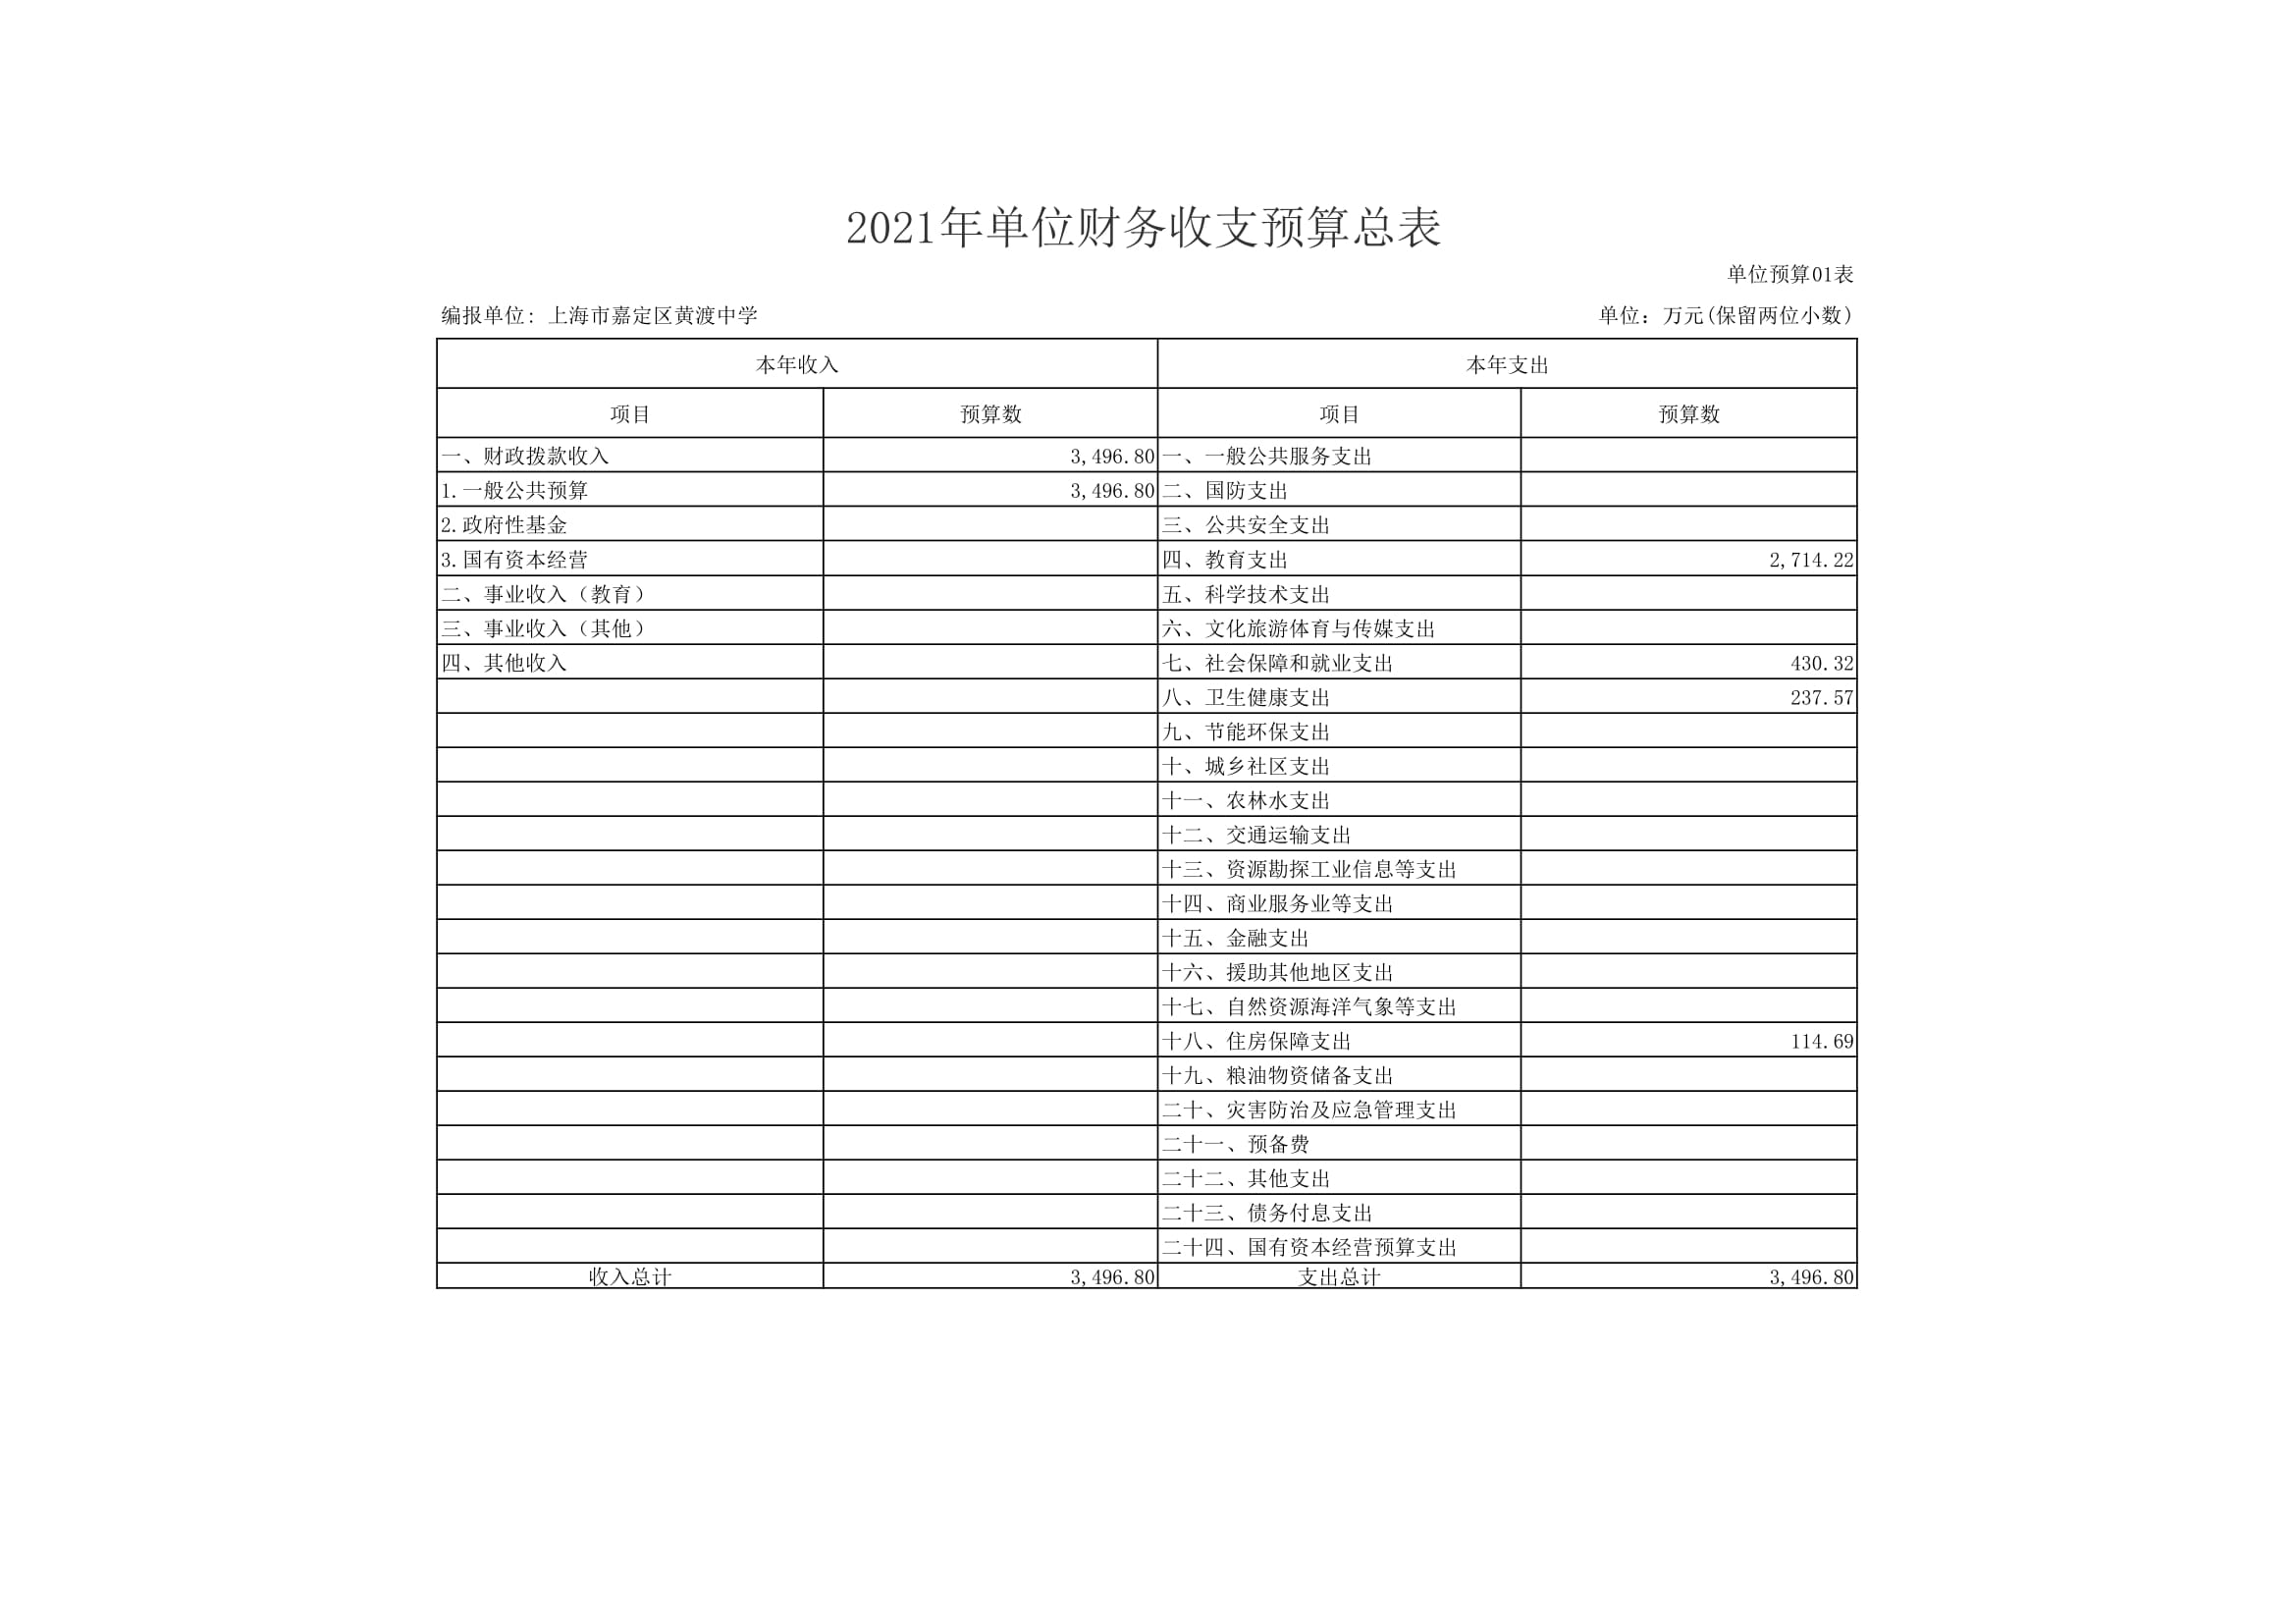 黄渡中学2021年单位支出预算表-08.jpg